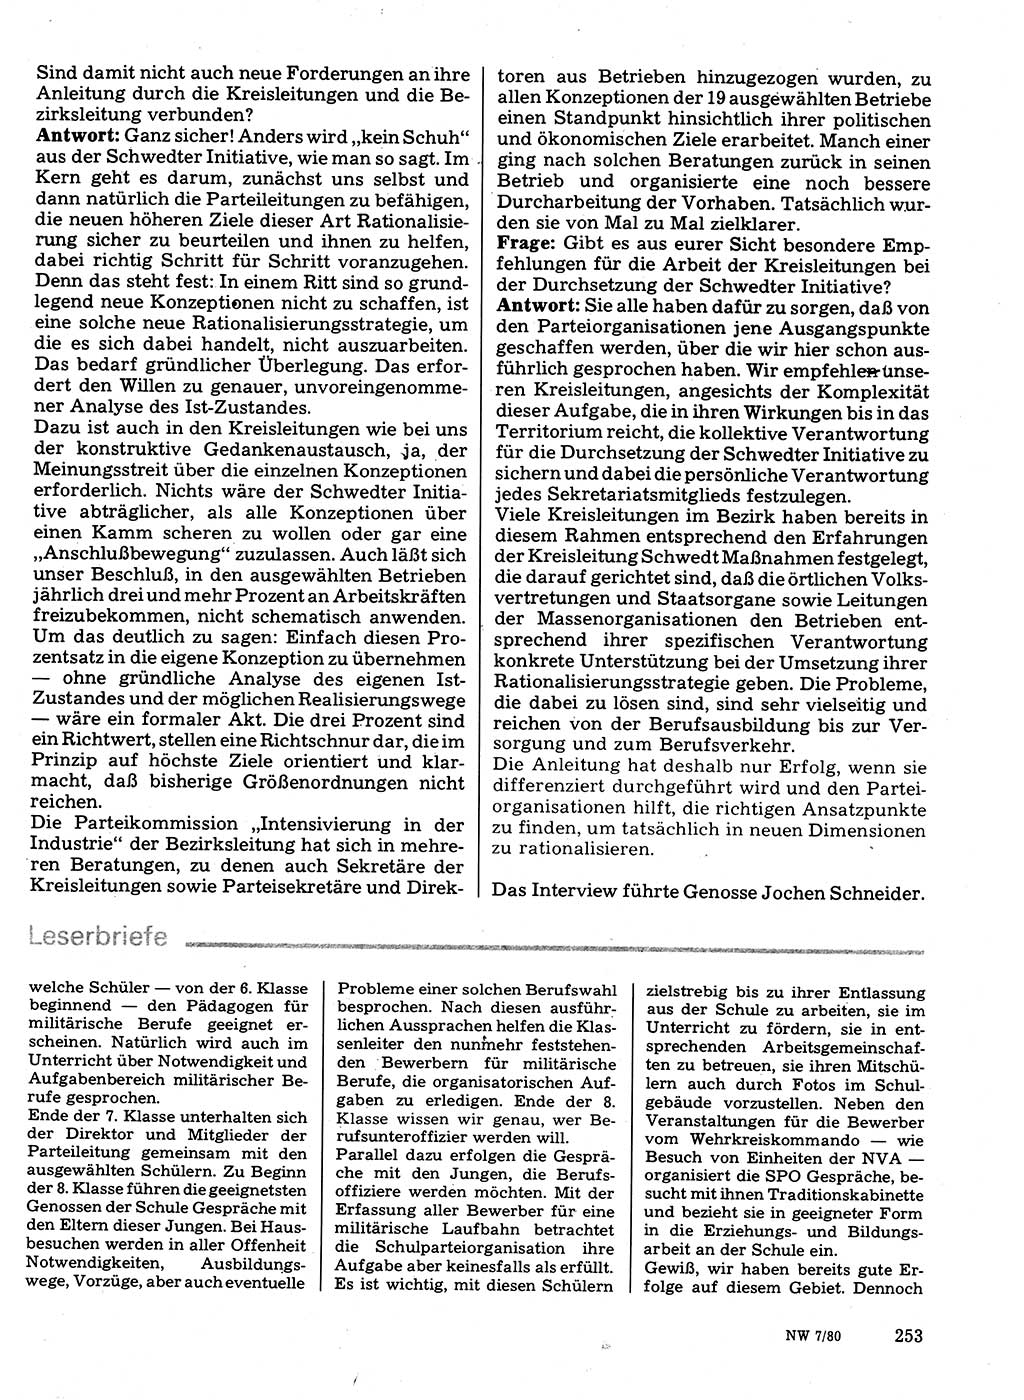 Neuer Weg (NW), Organ des Zentralkomitees (ZK) der SED (Sozialistische Einheitspartei Deutschlands) für Fragen des Parteilebens, 35. Jahrgang [Deutsche Demokratische Republik (DDR)] 1980, Seite 253 (NW ZK SED DDR 1980, S. 253)